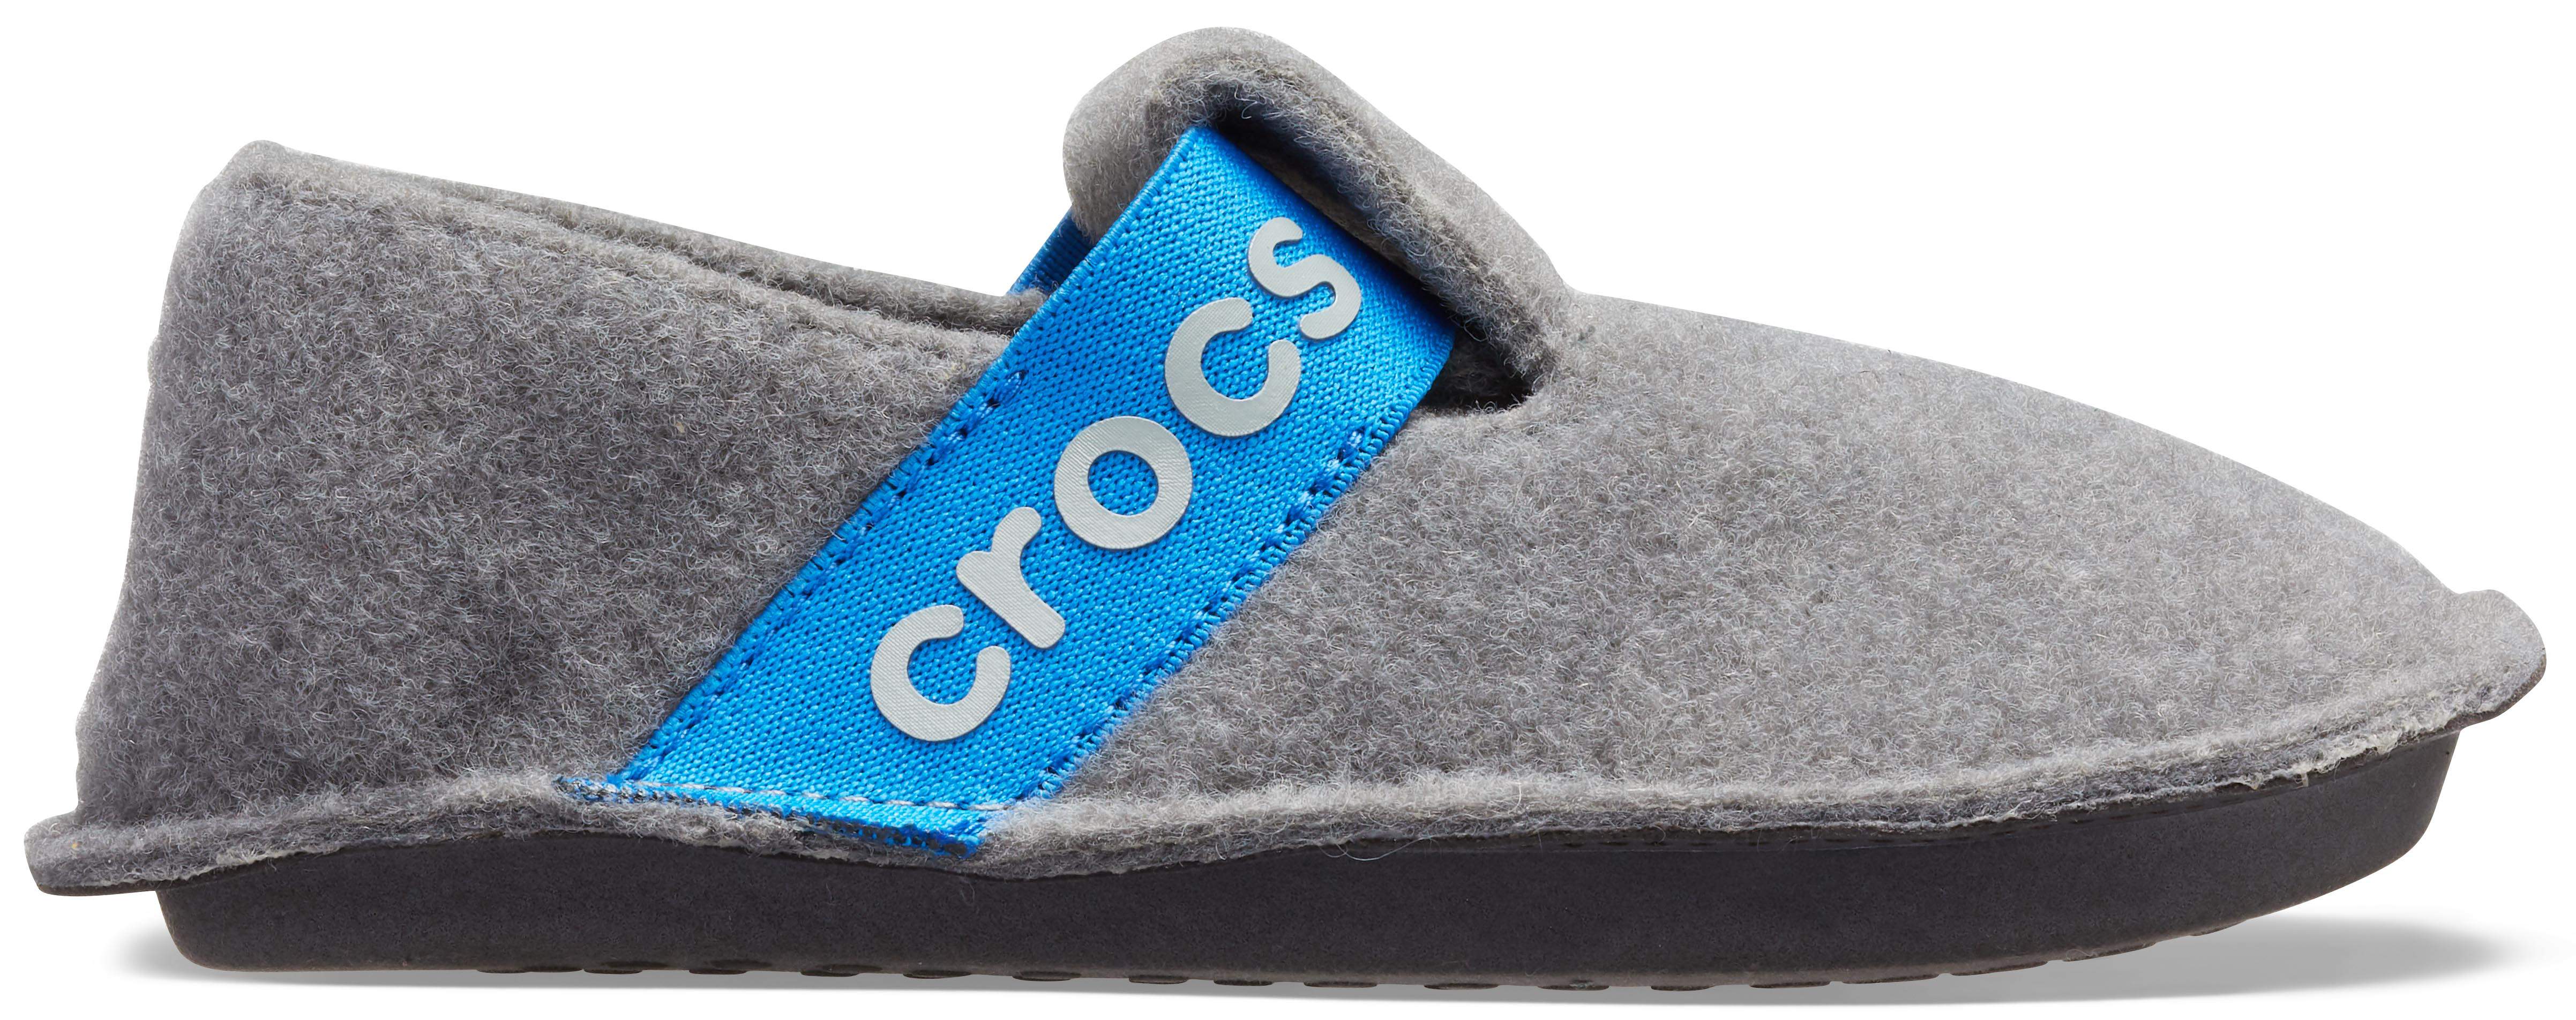 crocs kids classic slipper